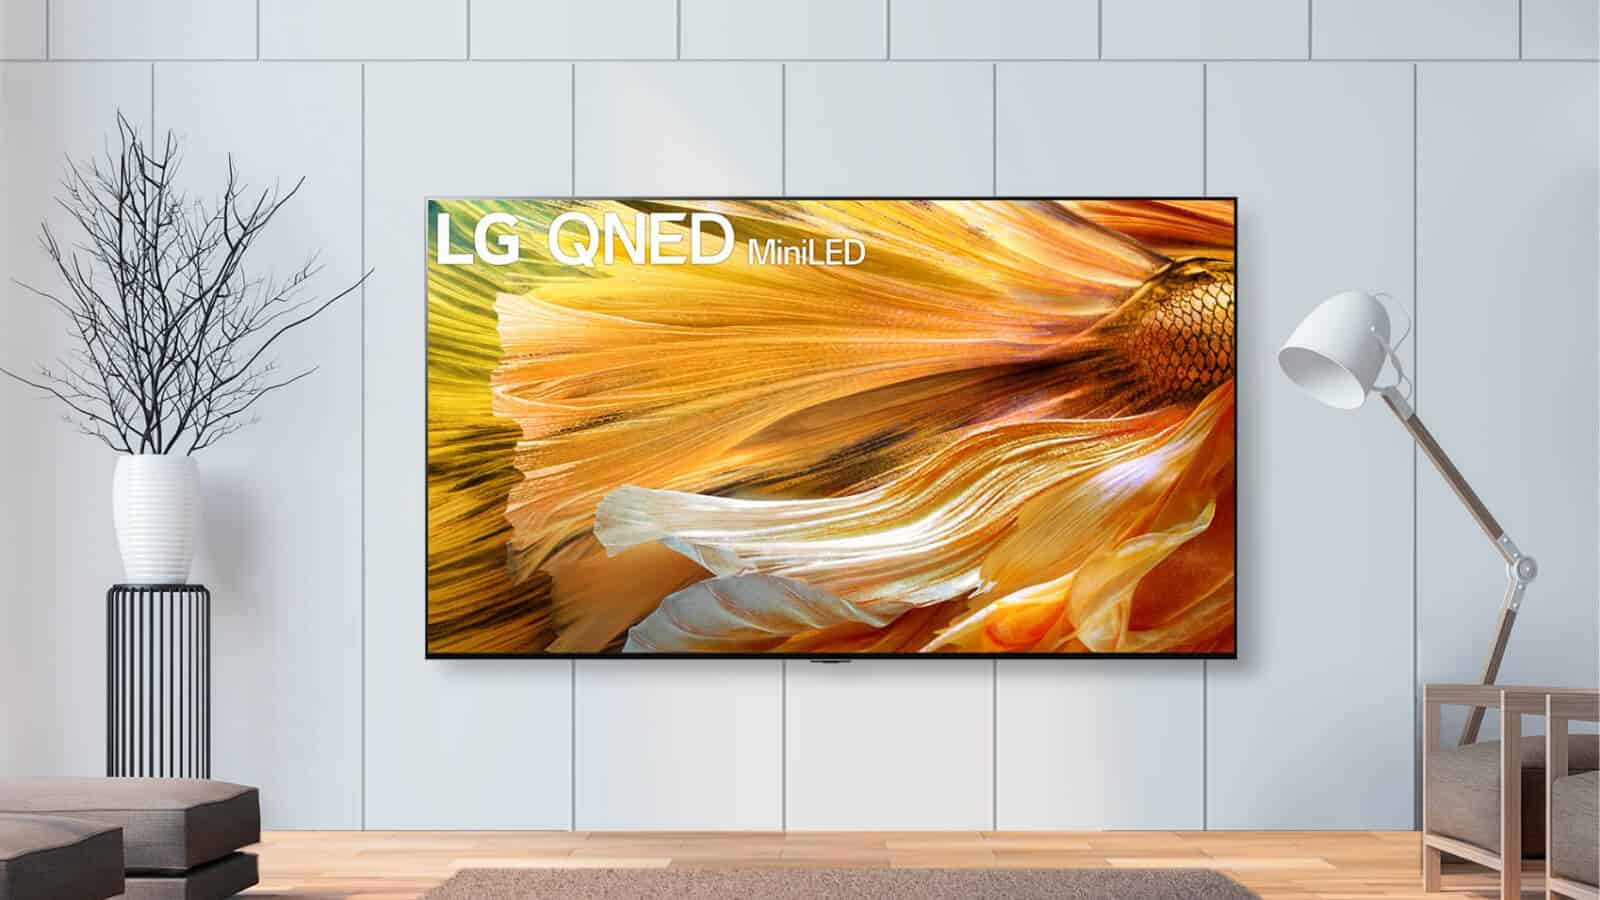 Новые светодиодные мини-телевизоры LG QNED прибывают в США Далее…